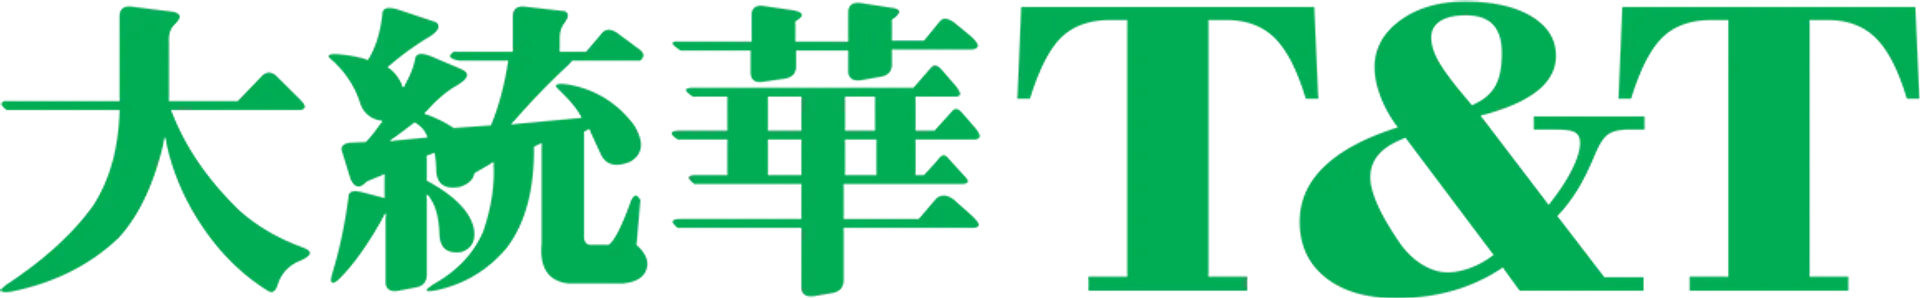 T&T logo de circulaires